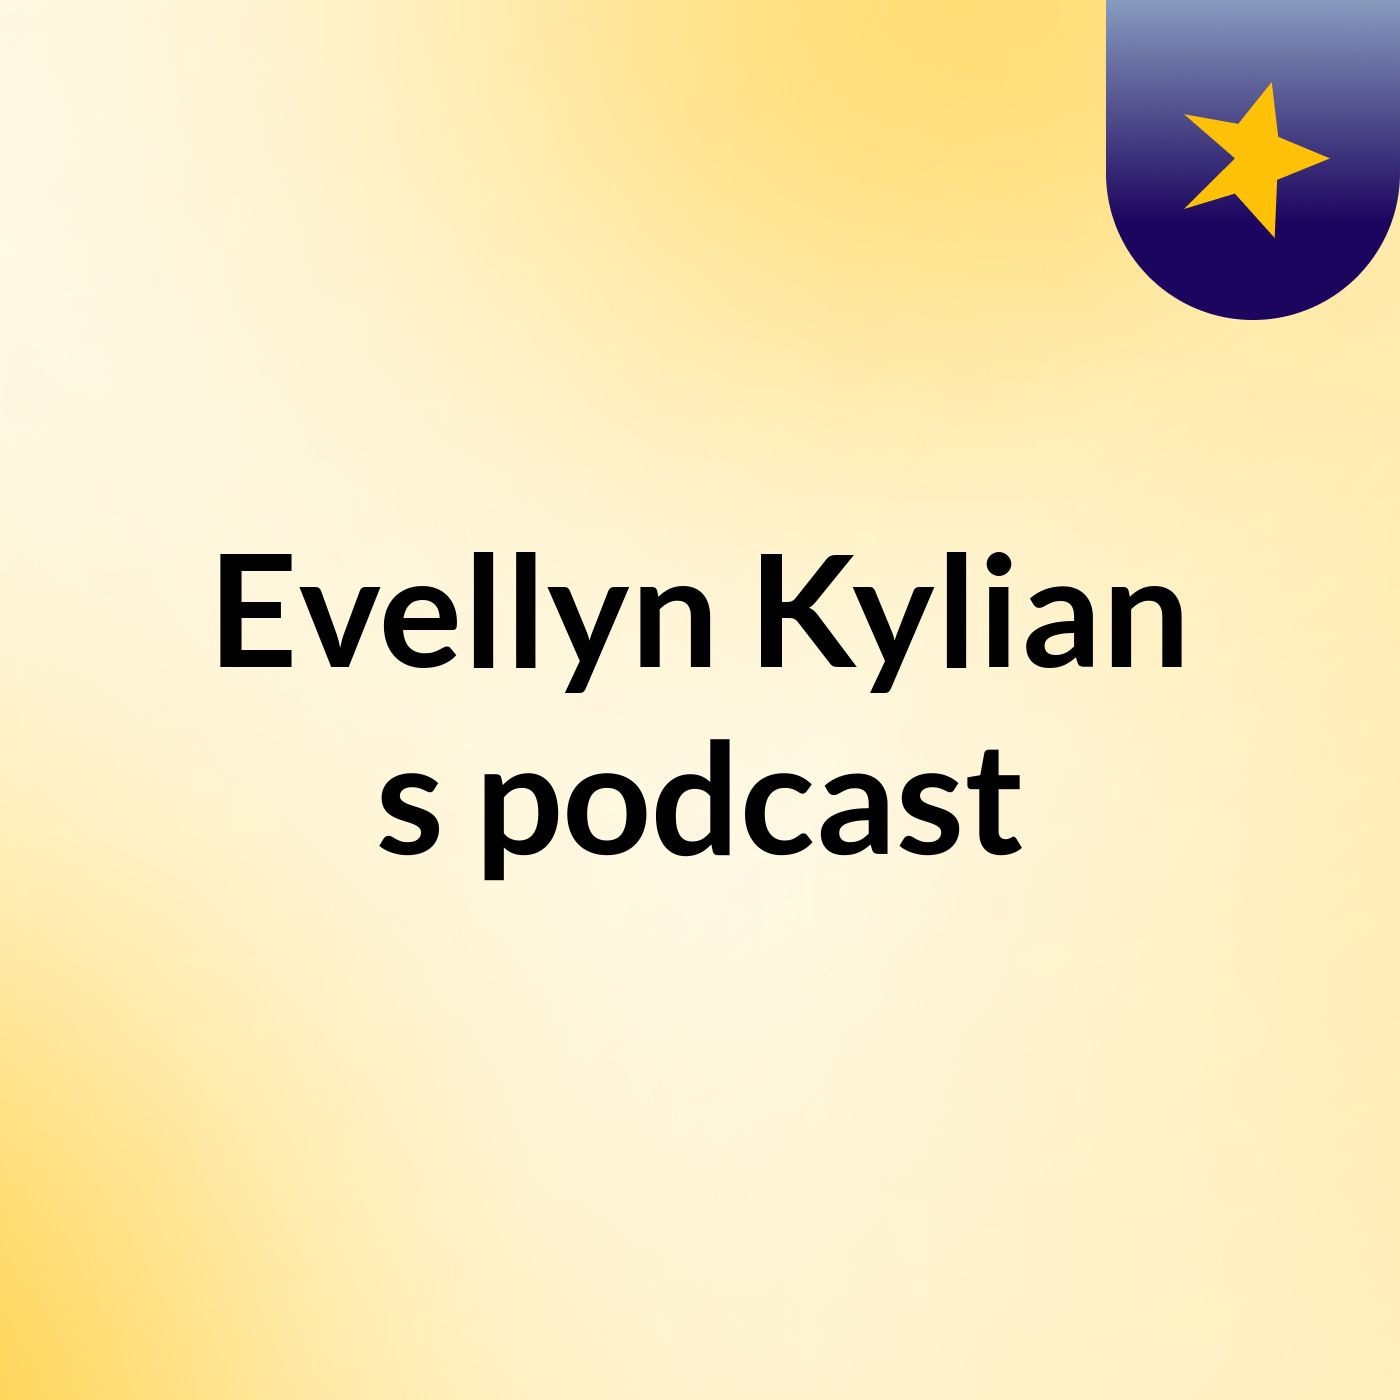 Evellyn Kylian's podcast